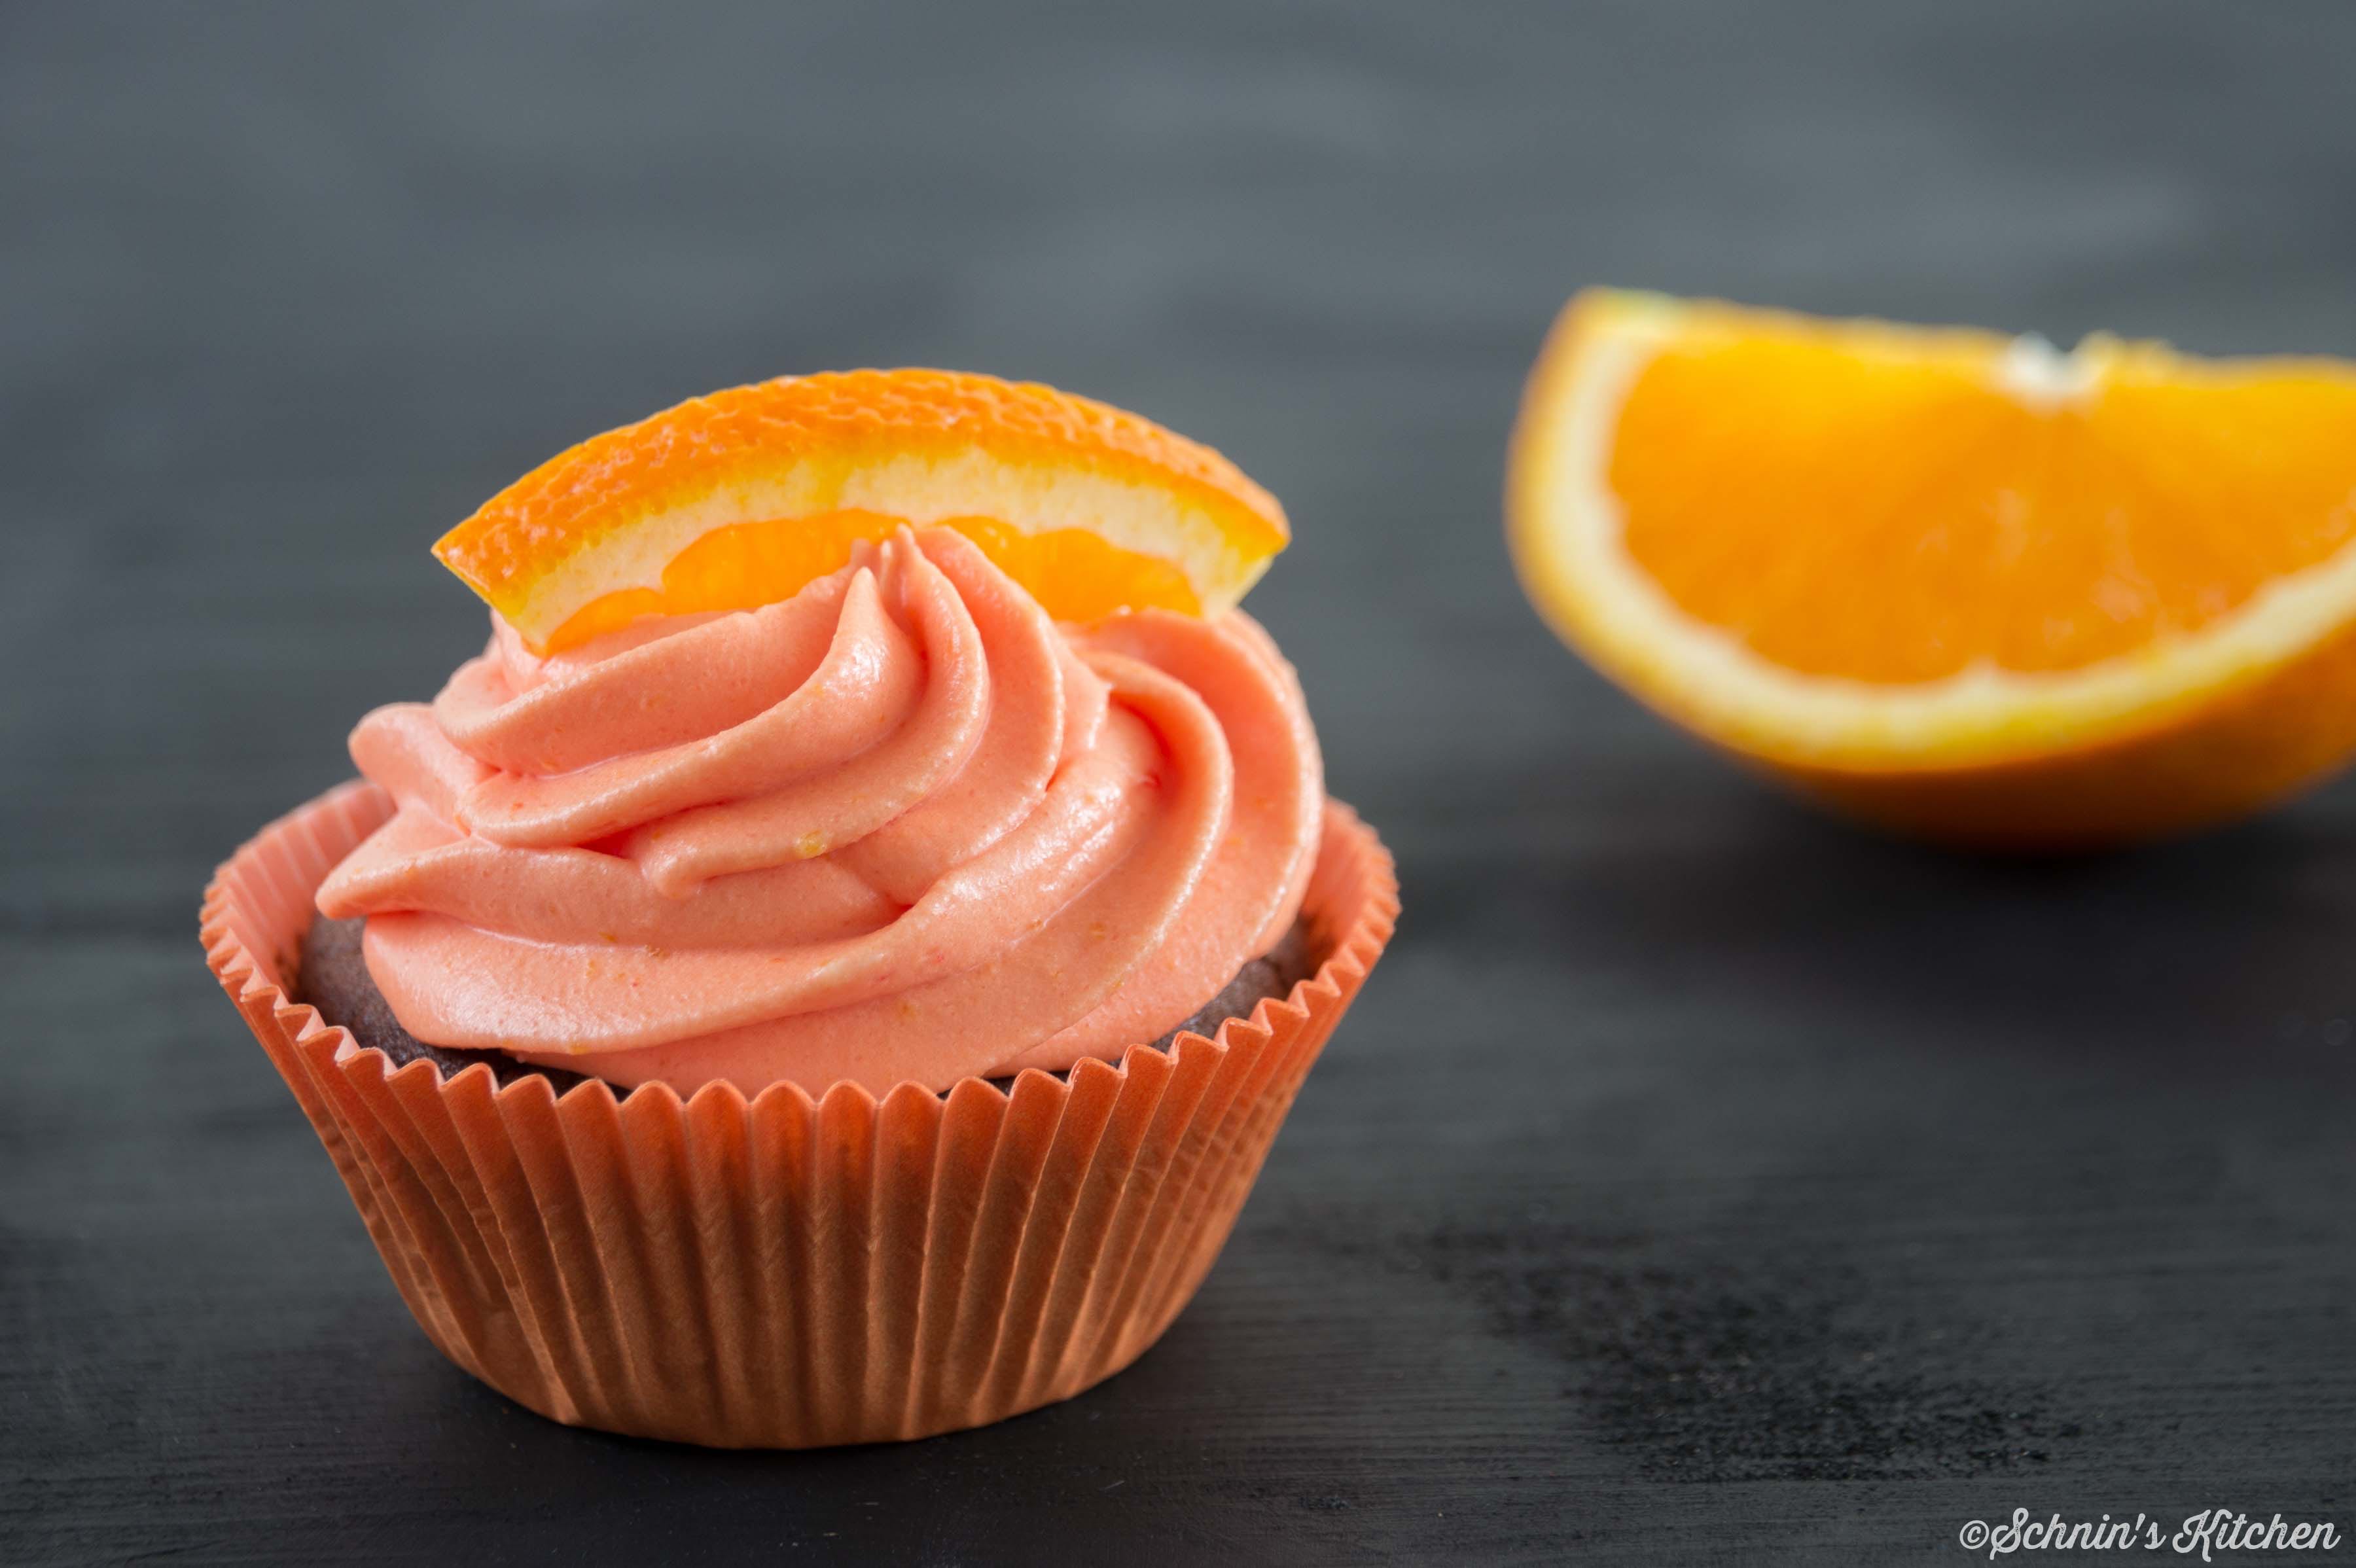 Schnin's Kitchen: Orangen-Cupcakes